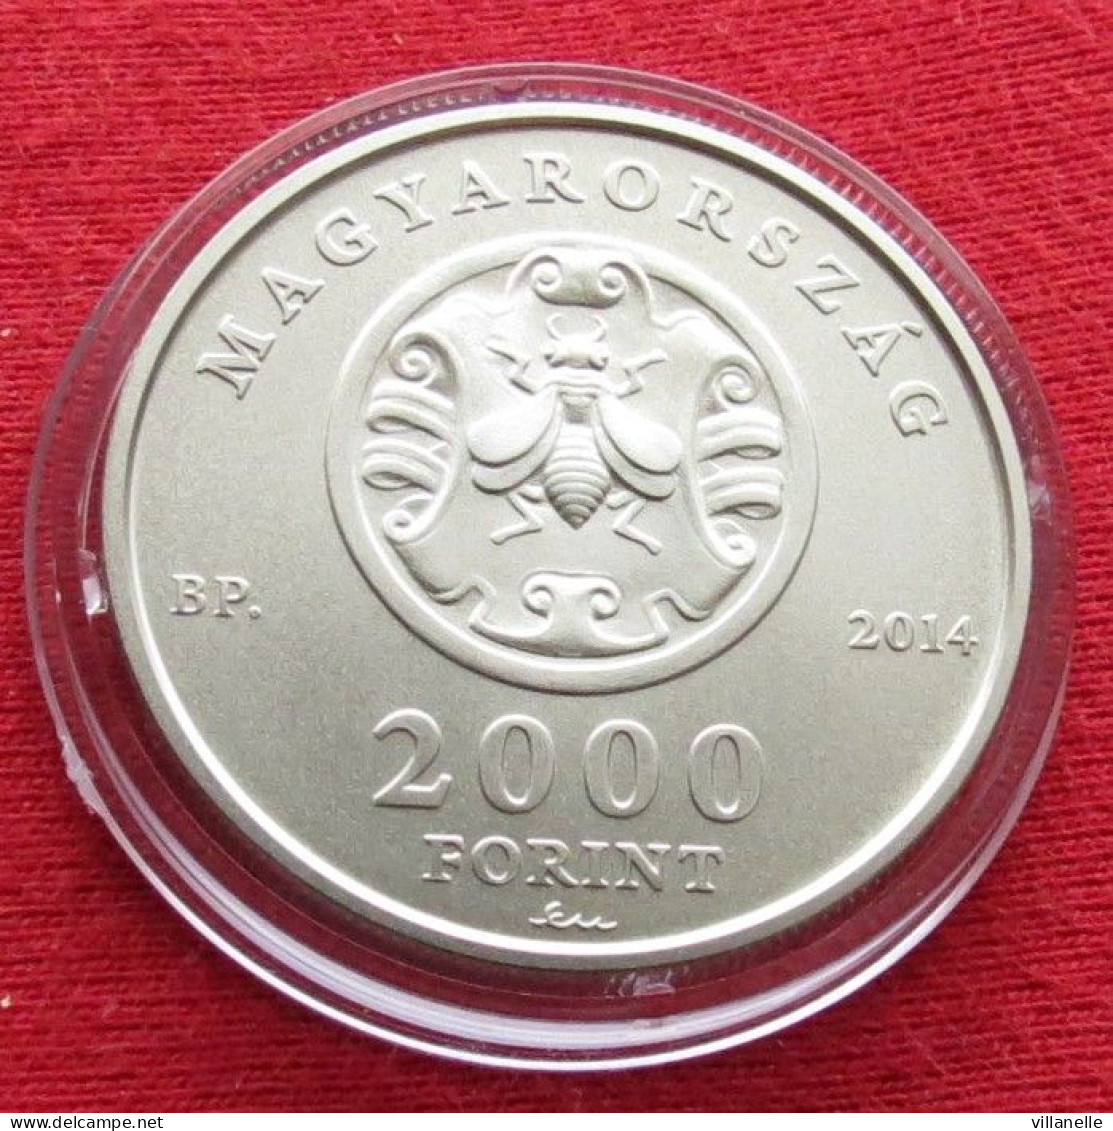 Hungria Hungary 2000 Forint 2014 Andras Fay UNC ºº - Hungary